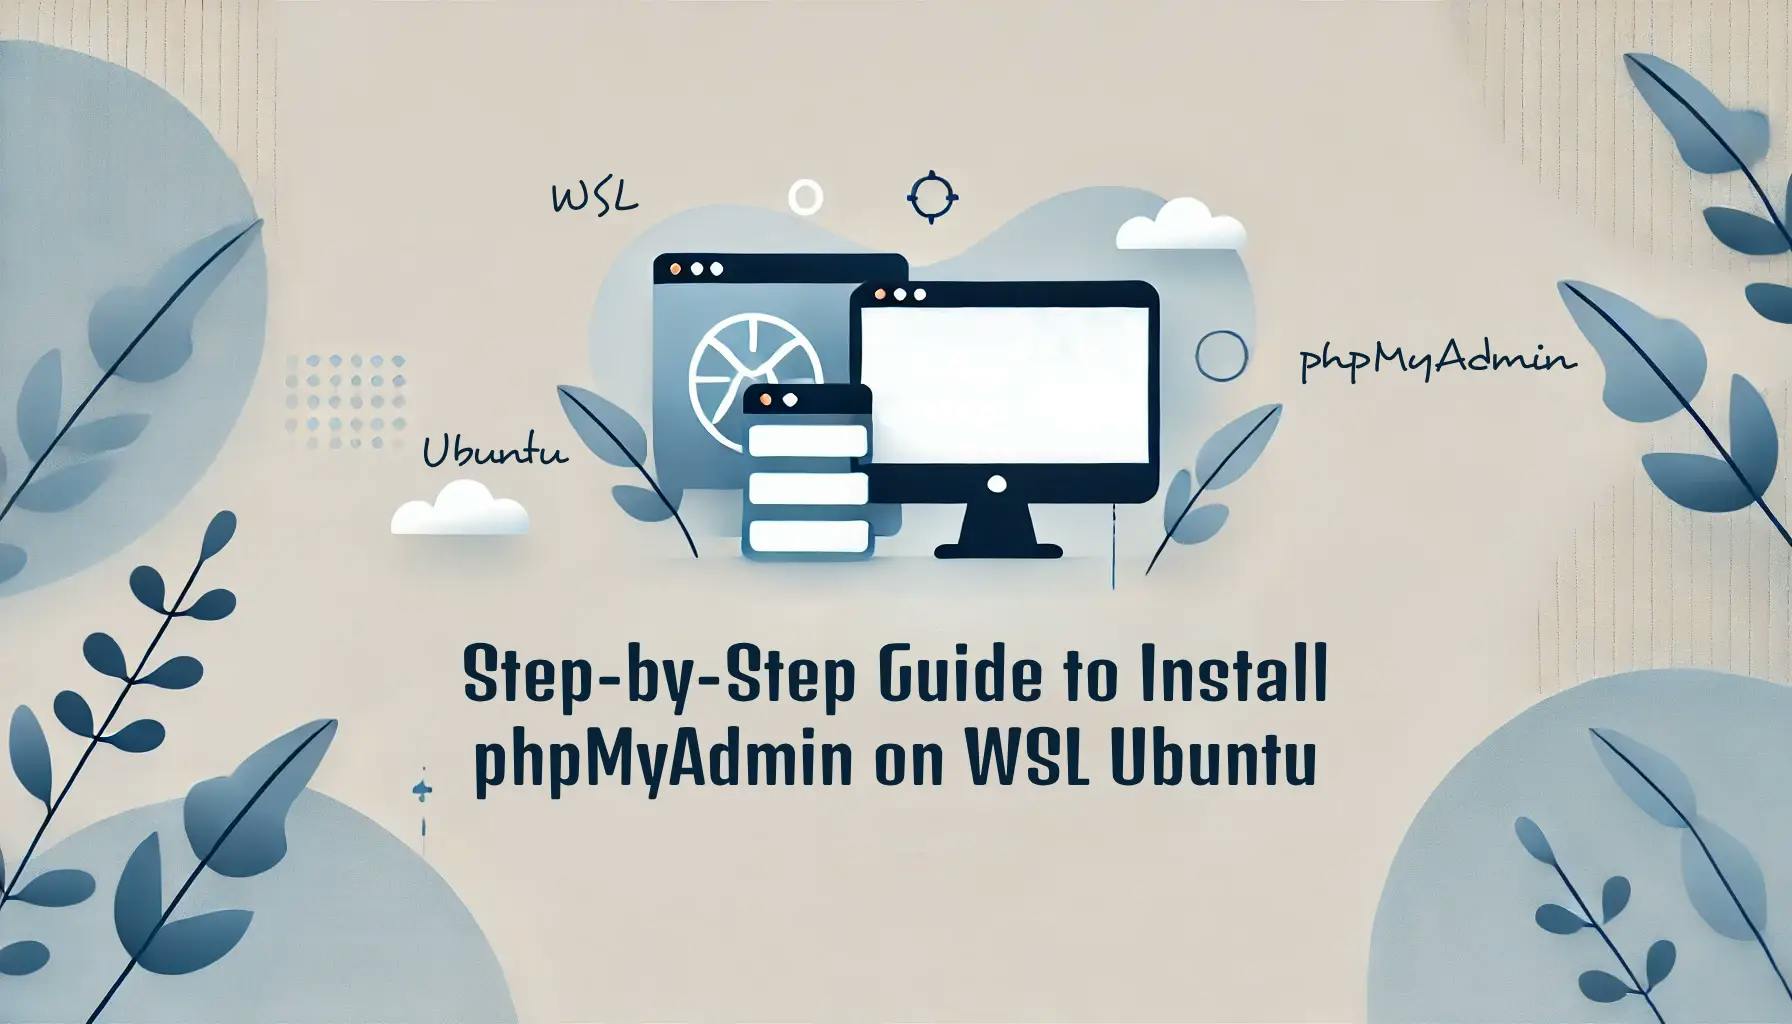 Installing phpmyadmin on Ubuntu